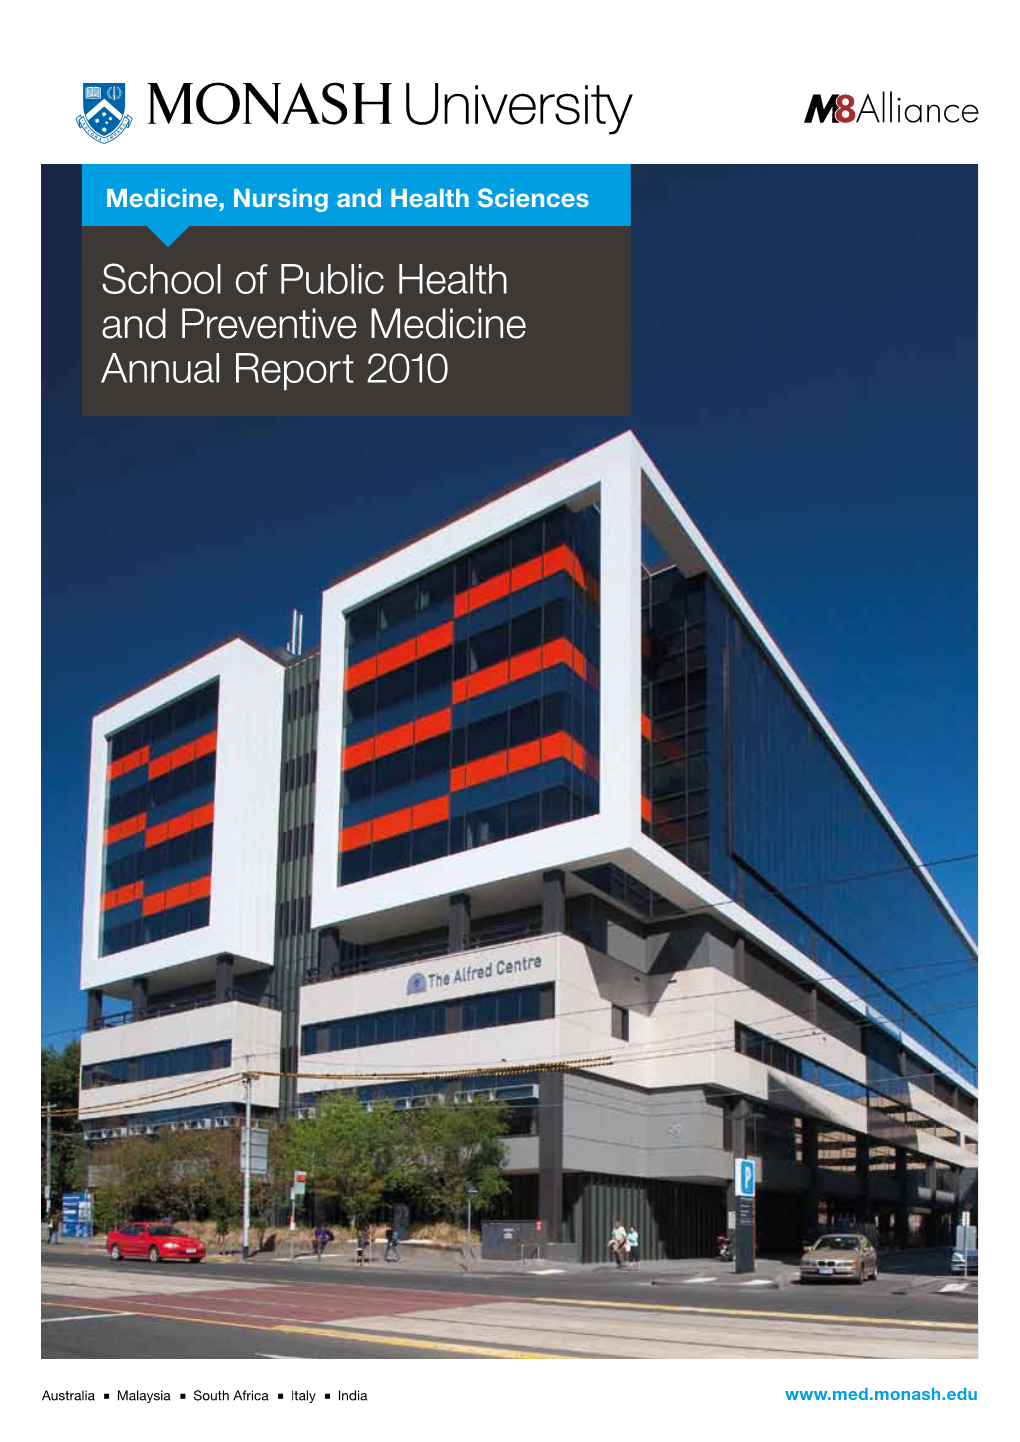 School of Public Health and Preventive Medicine Annual Report 2010